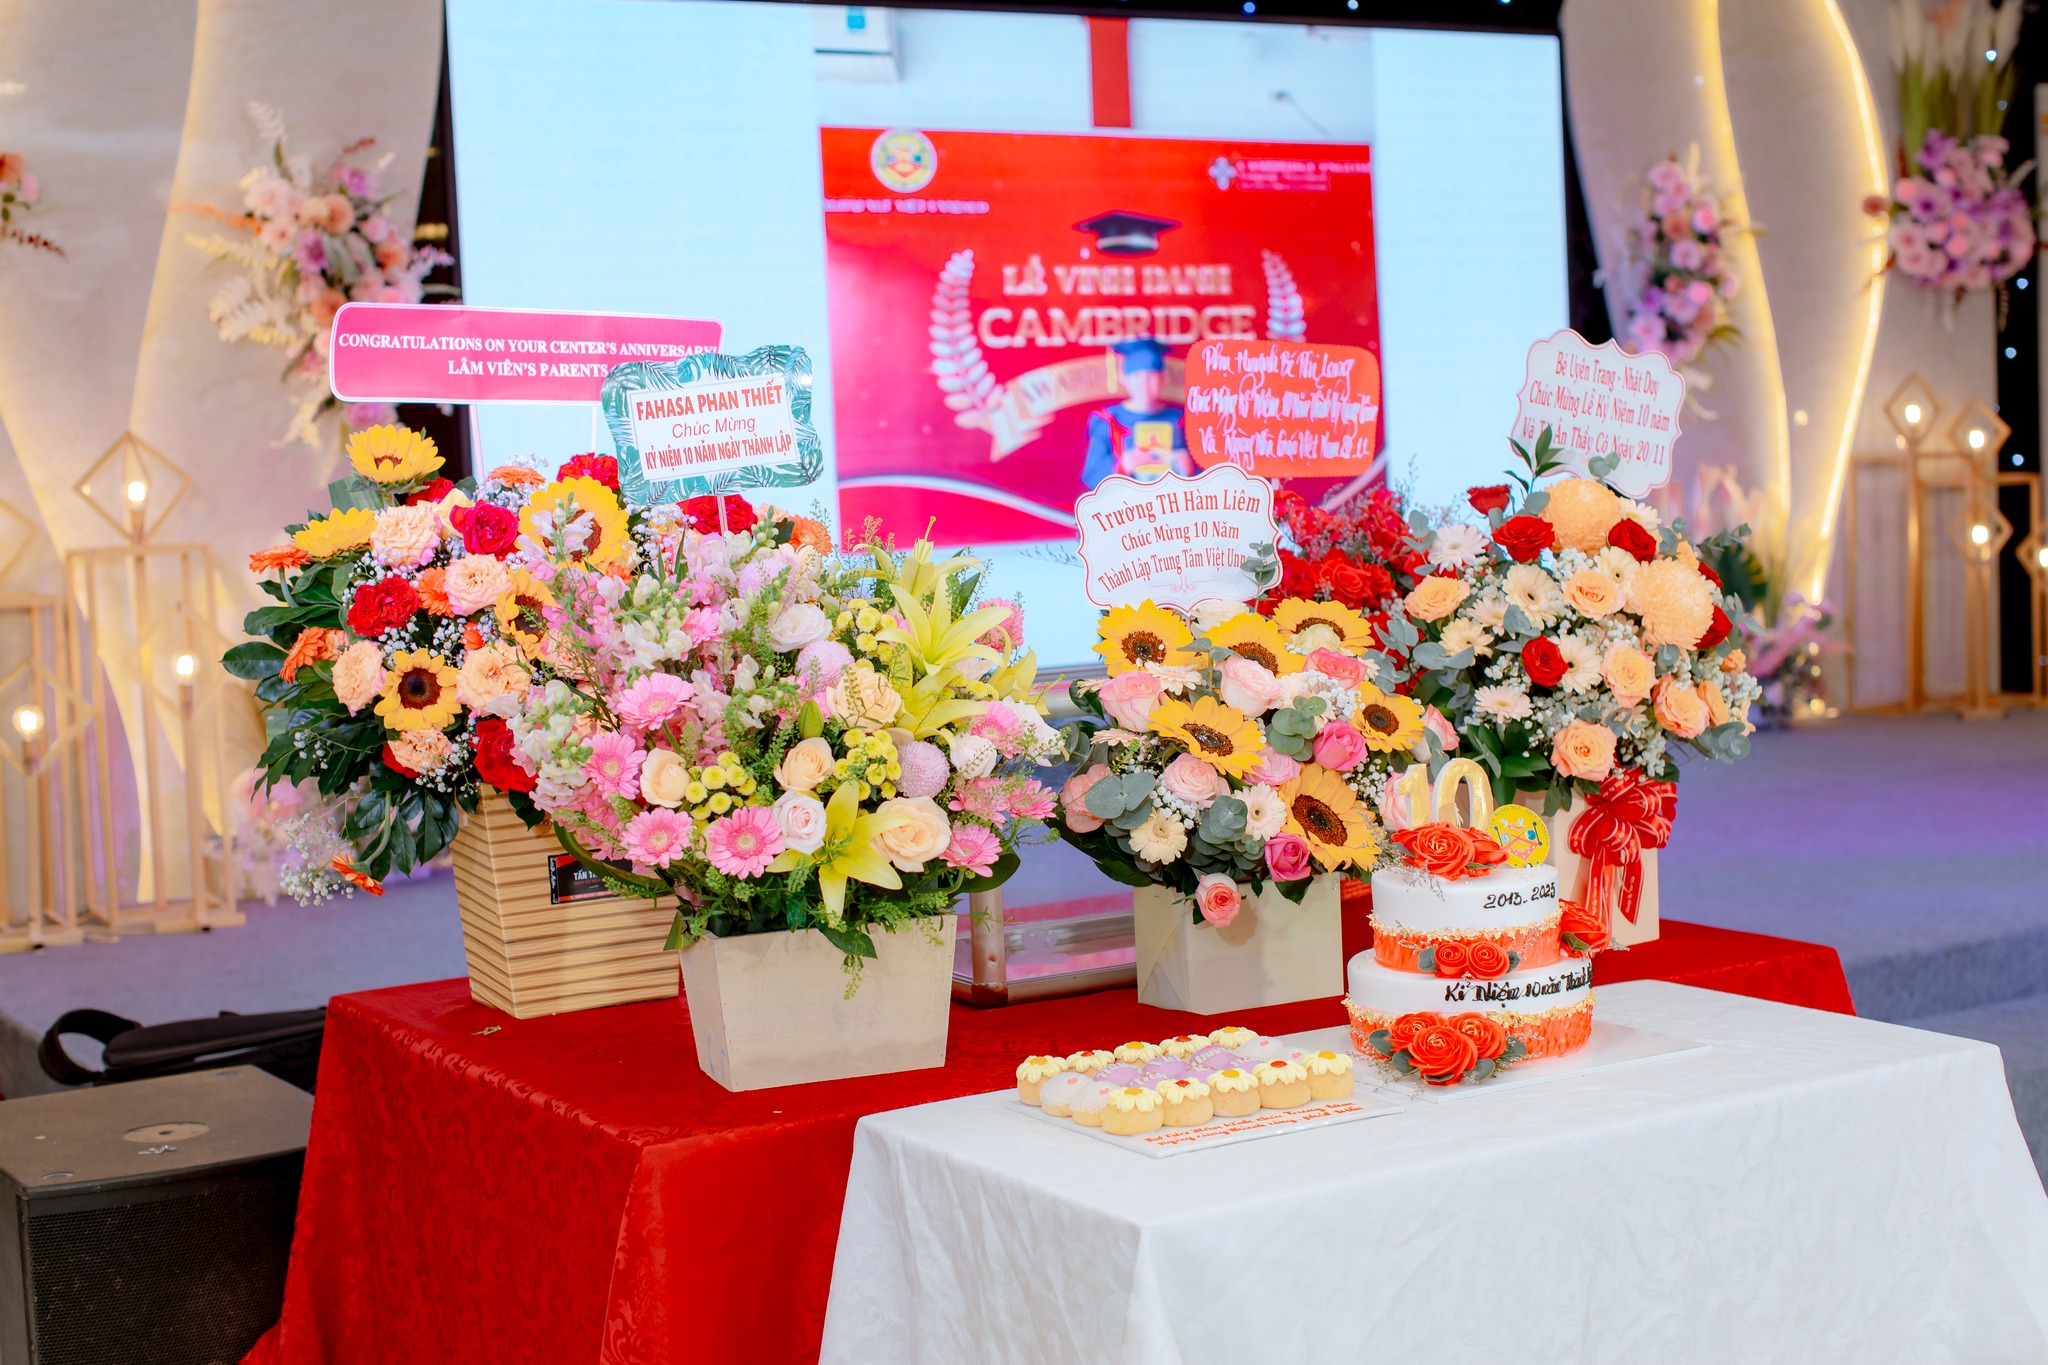 Trung tâm Ngoại ngữ Việt Unnesco Phan Thiết đã tổ chức buổi lễ kỷ niệm 10 năm thành lập và phát triển 2013 - 2023